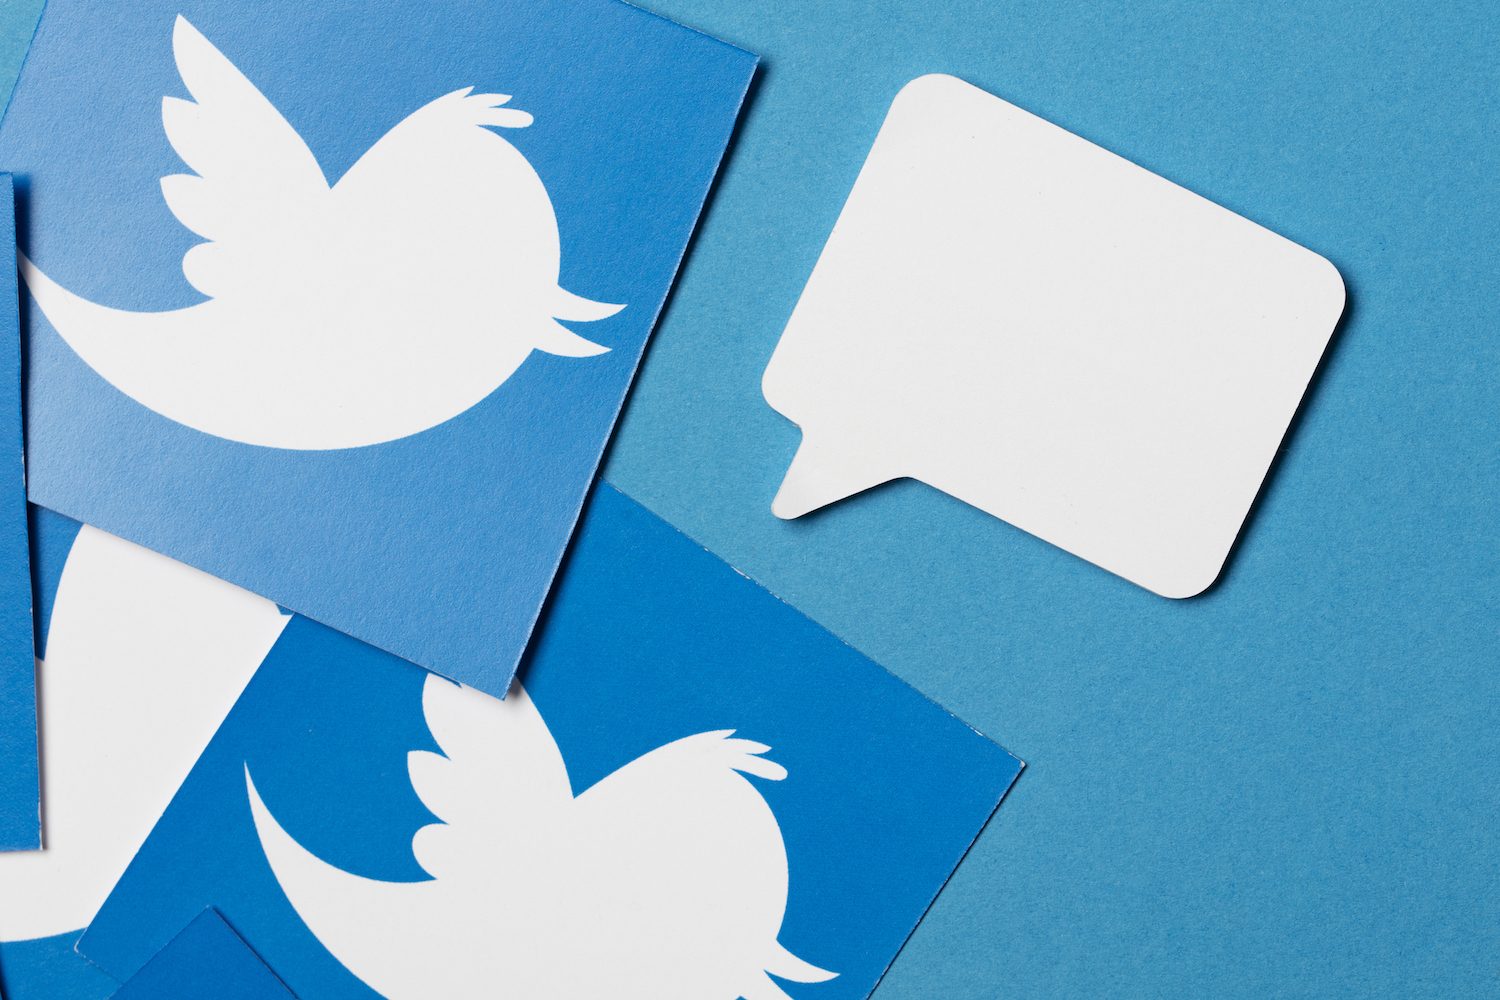 “Twitter đang phát triển tiêu chuẩn phi tập trung cho mạng xã hội” – tuyên bố của CEO Jack Dorsey